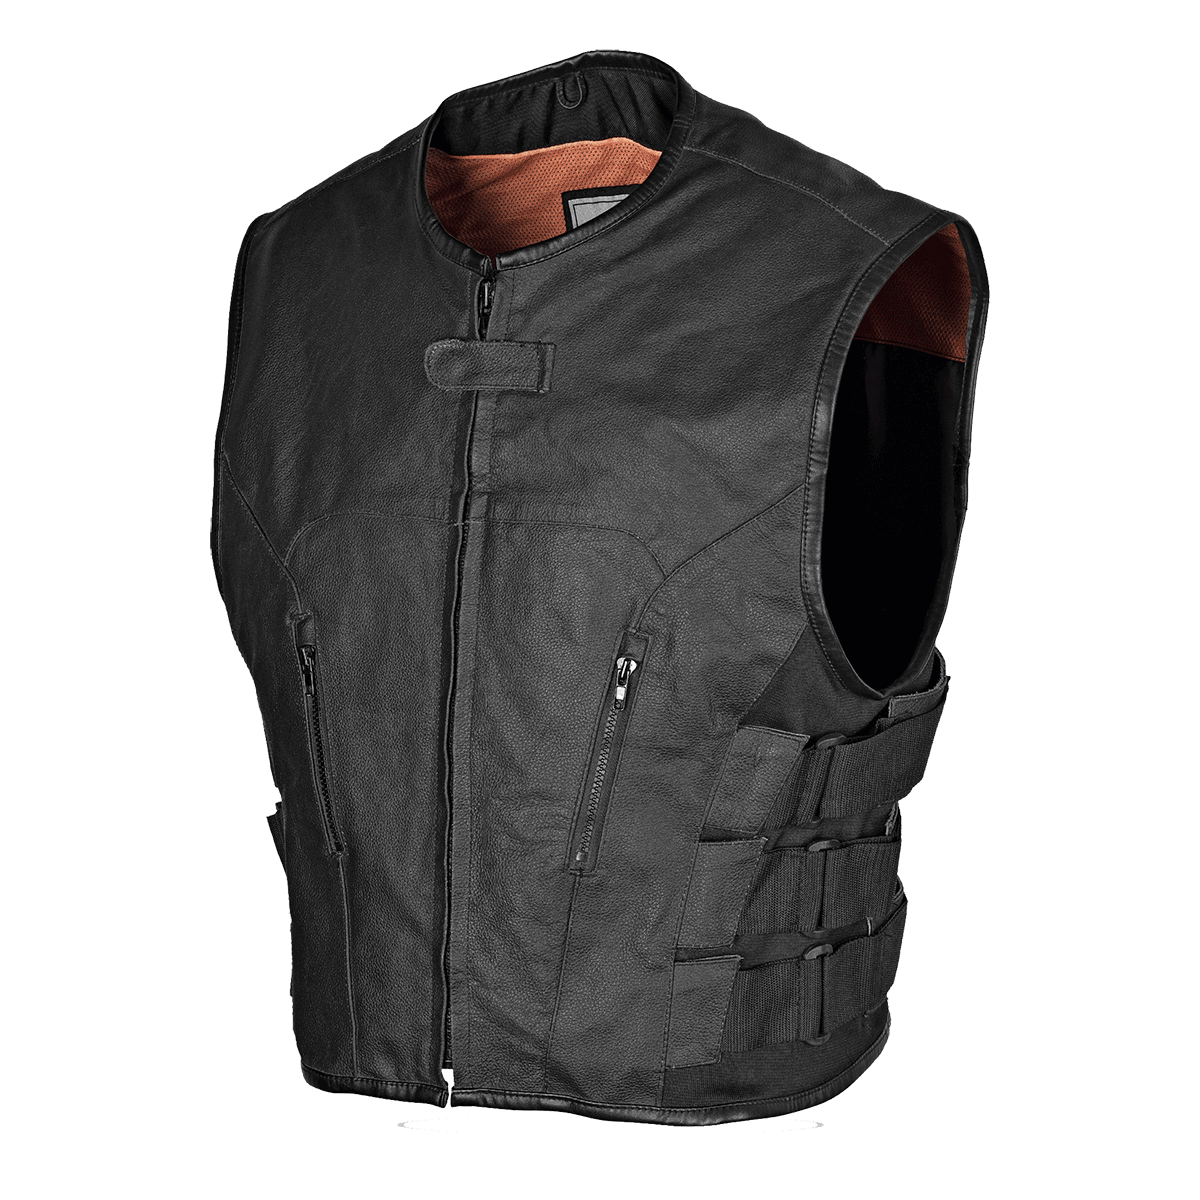 Vance Men's Premium Leather Tactical Style Vest